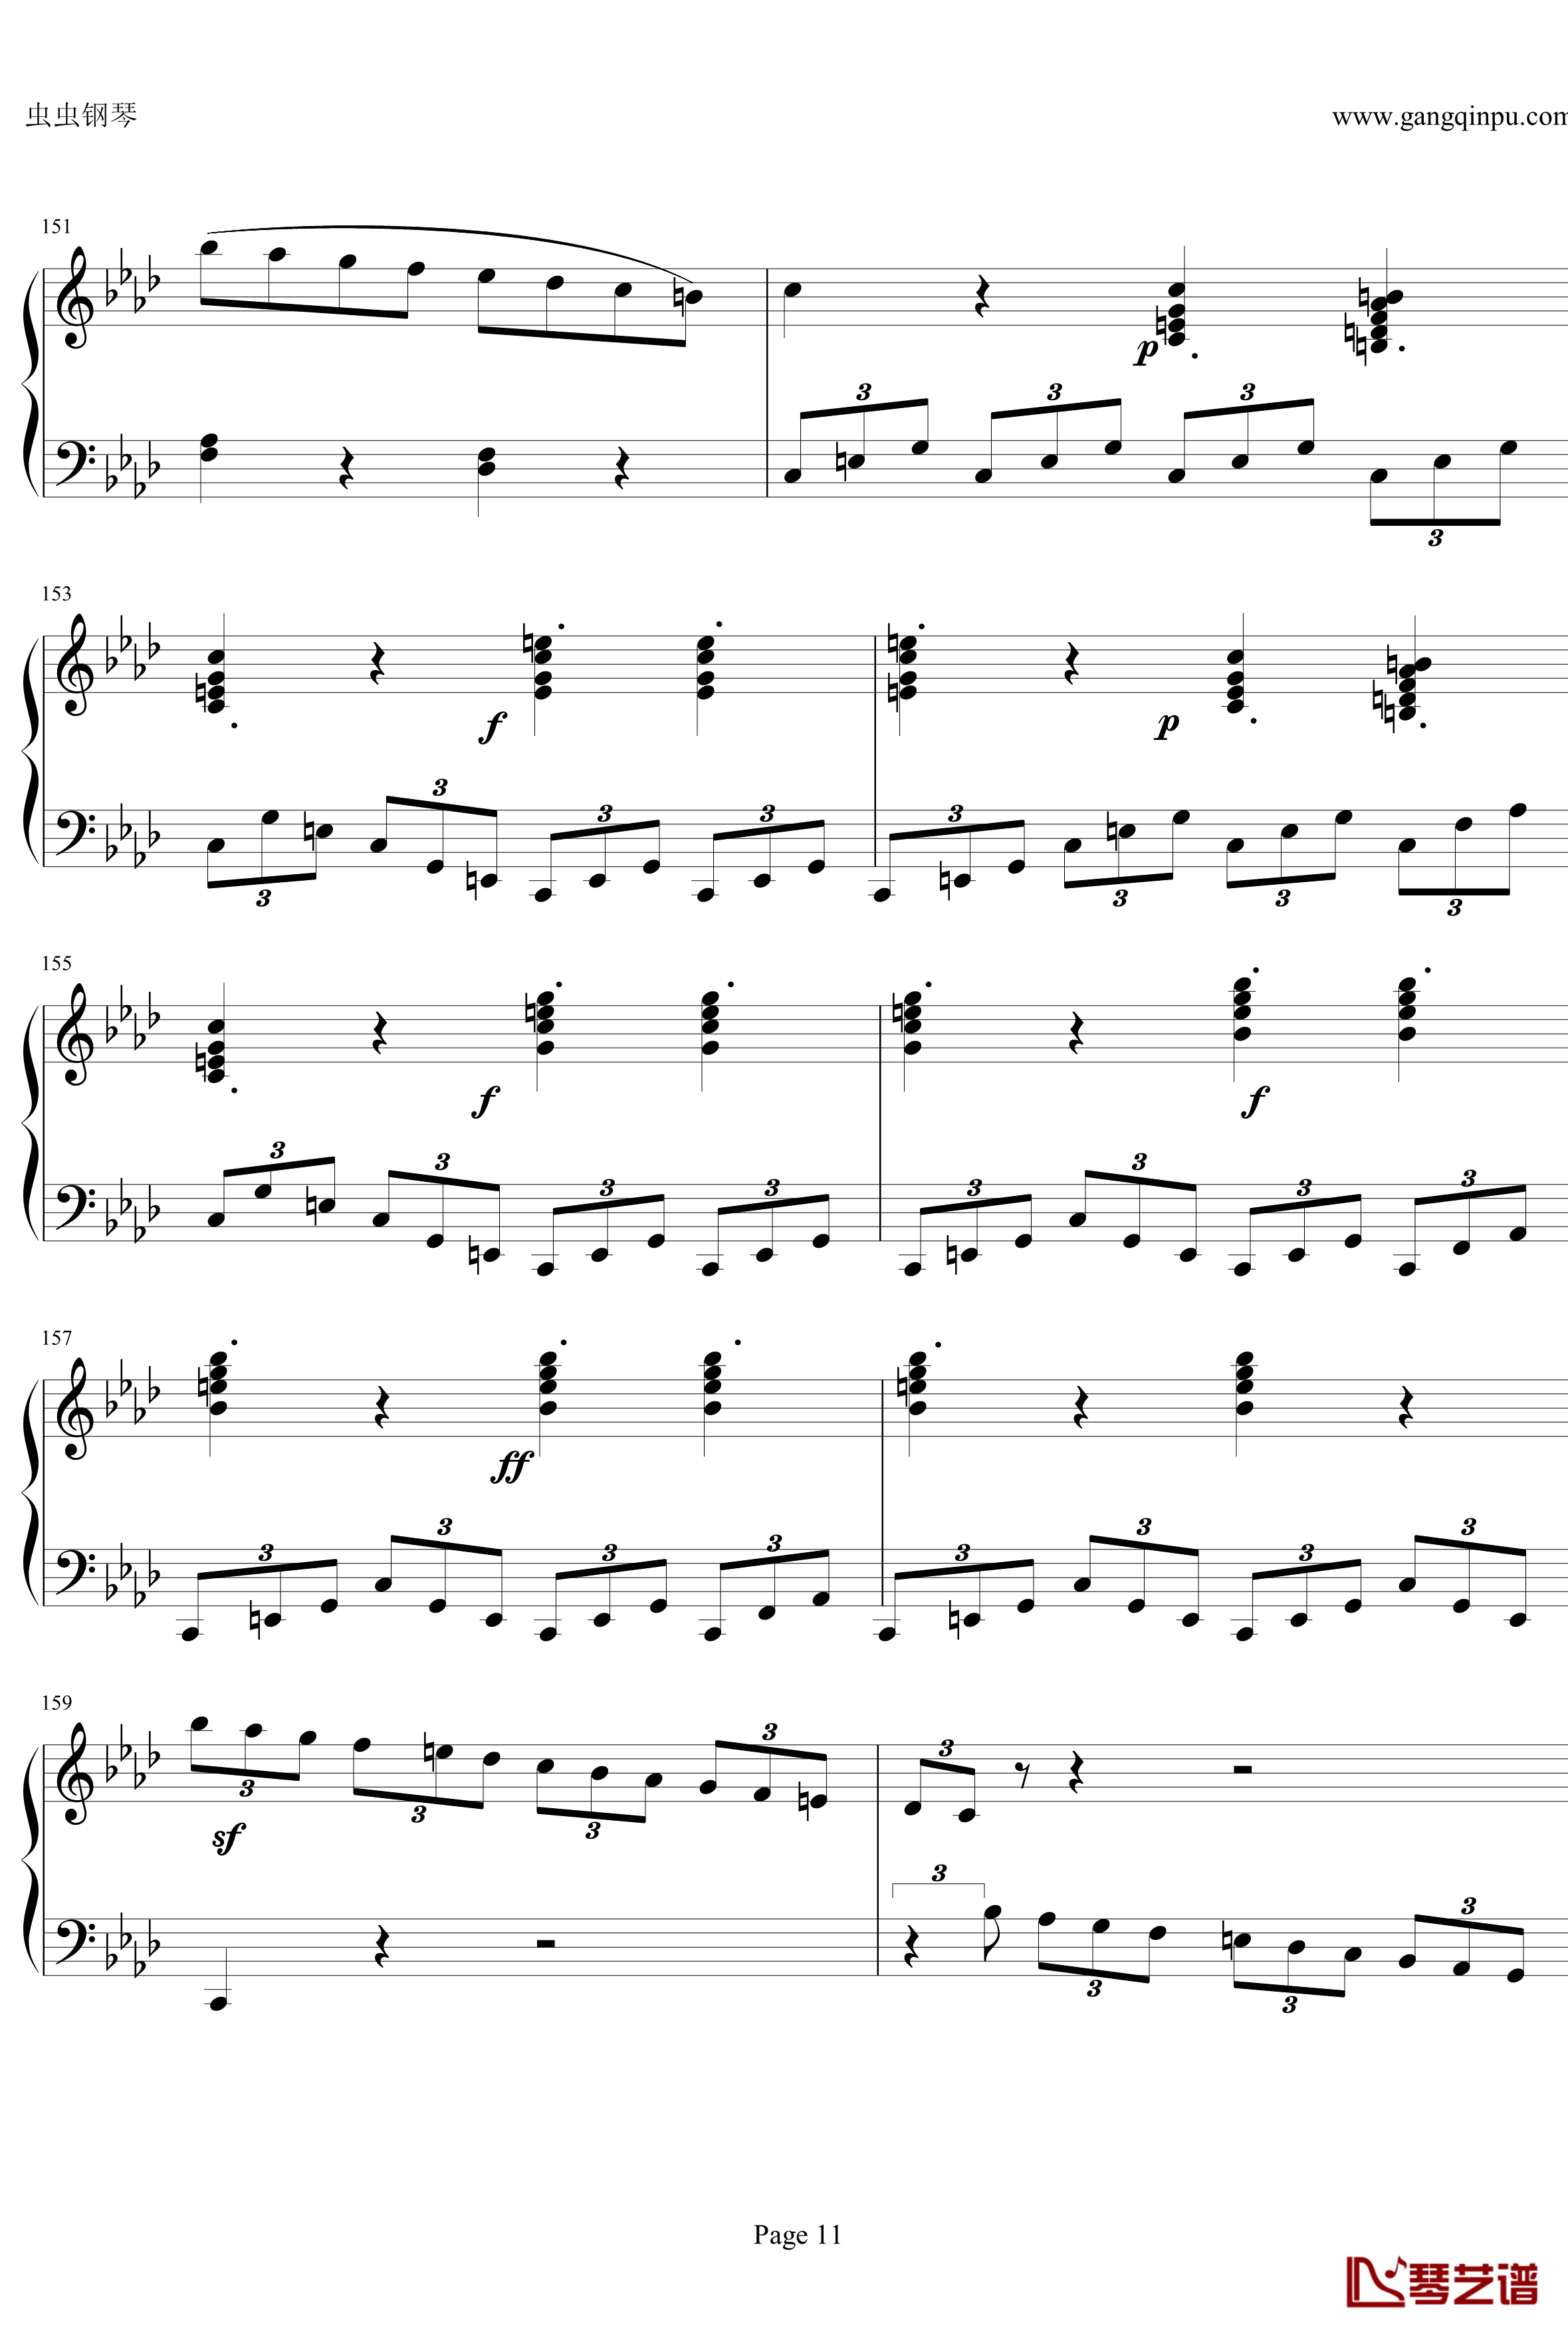 贝多芬第一钢琴奏鸣曲钢琴谱-作品2，第一号-贝多芬-beethoven11